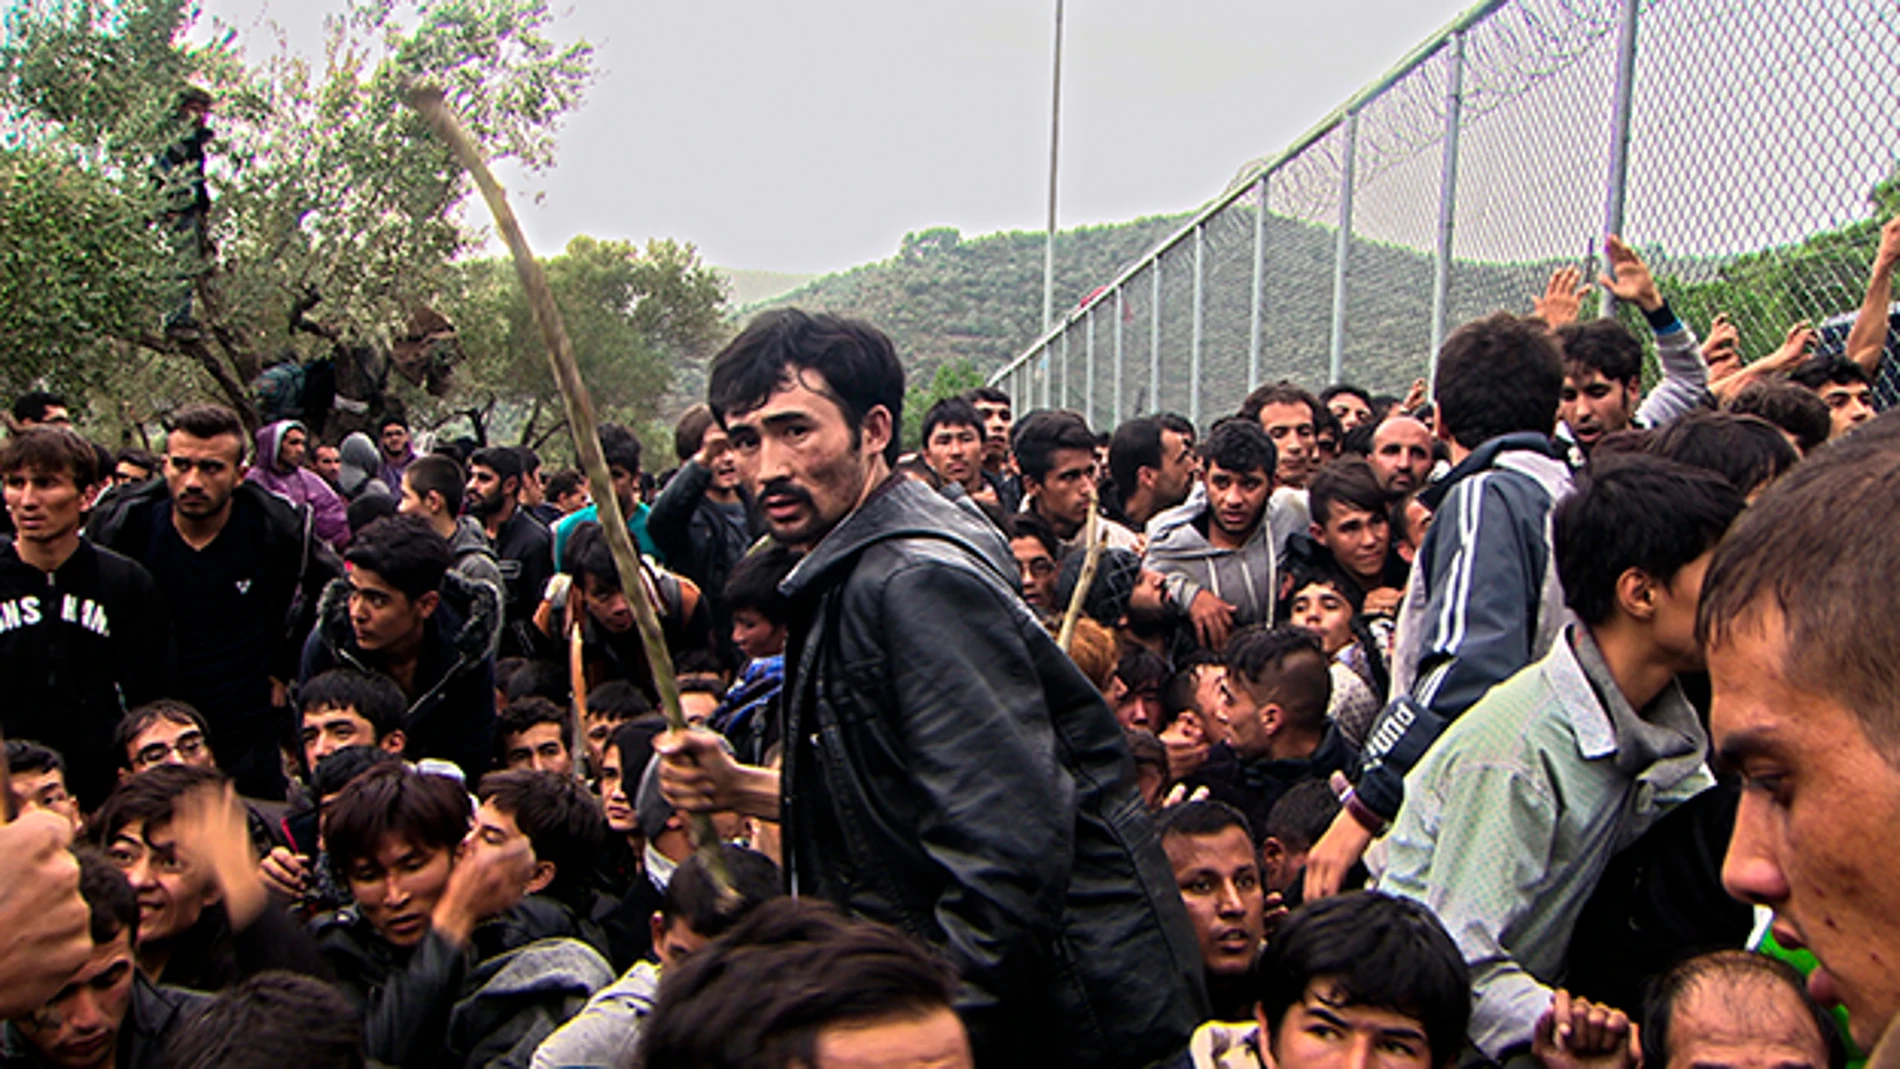 Refugiados en una frontera europea